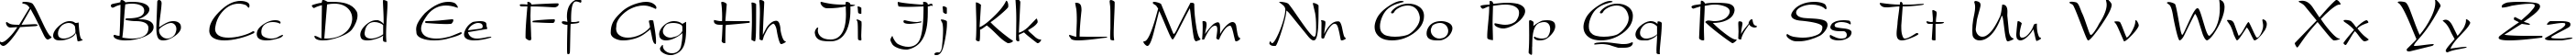 Пример написания английского алфавита шрифтом PresentScript Cyrillic